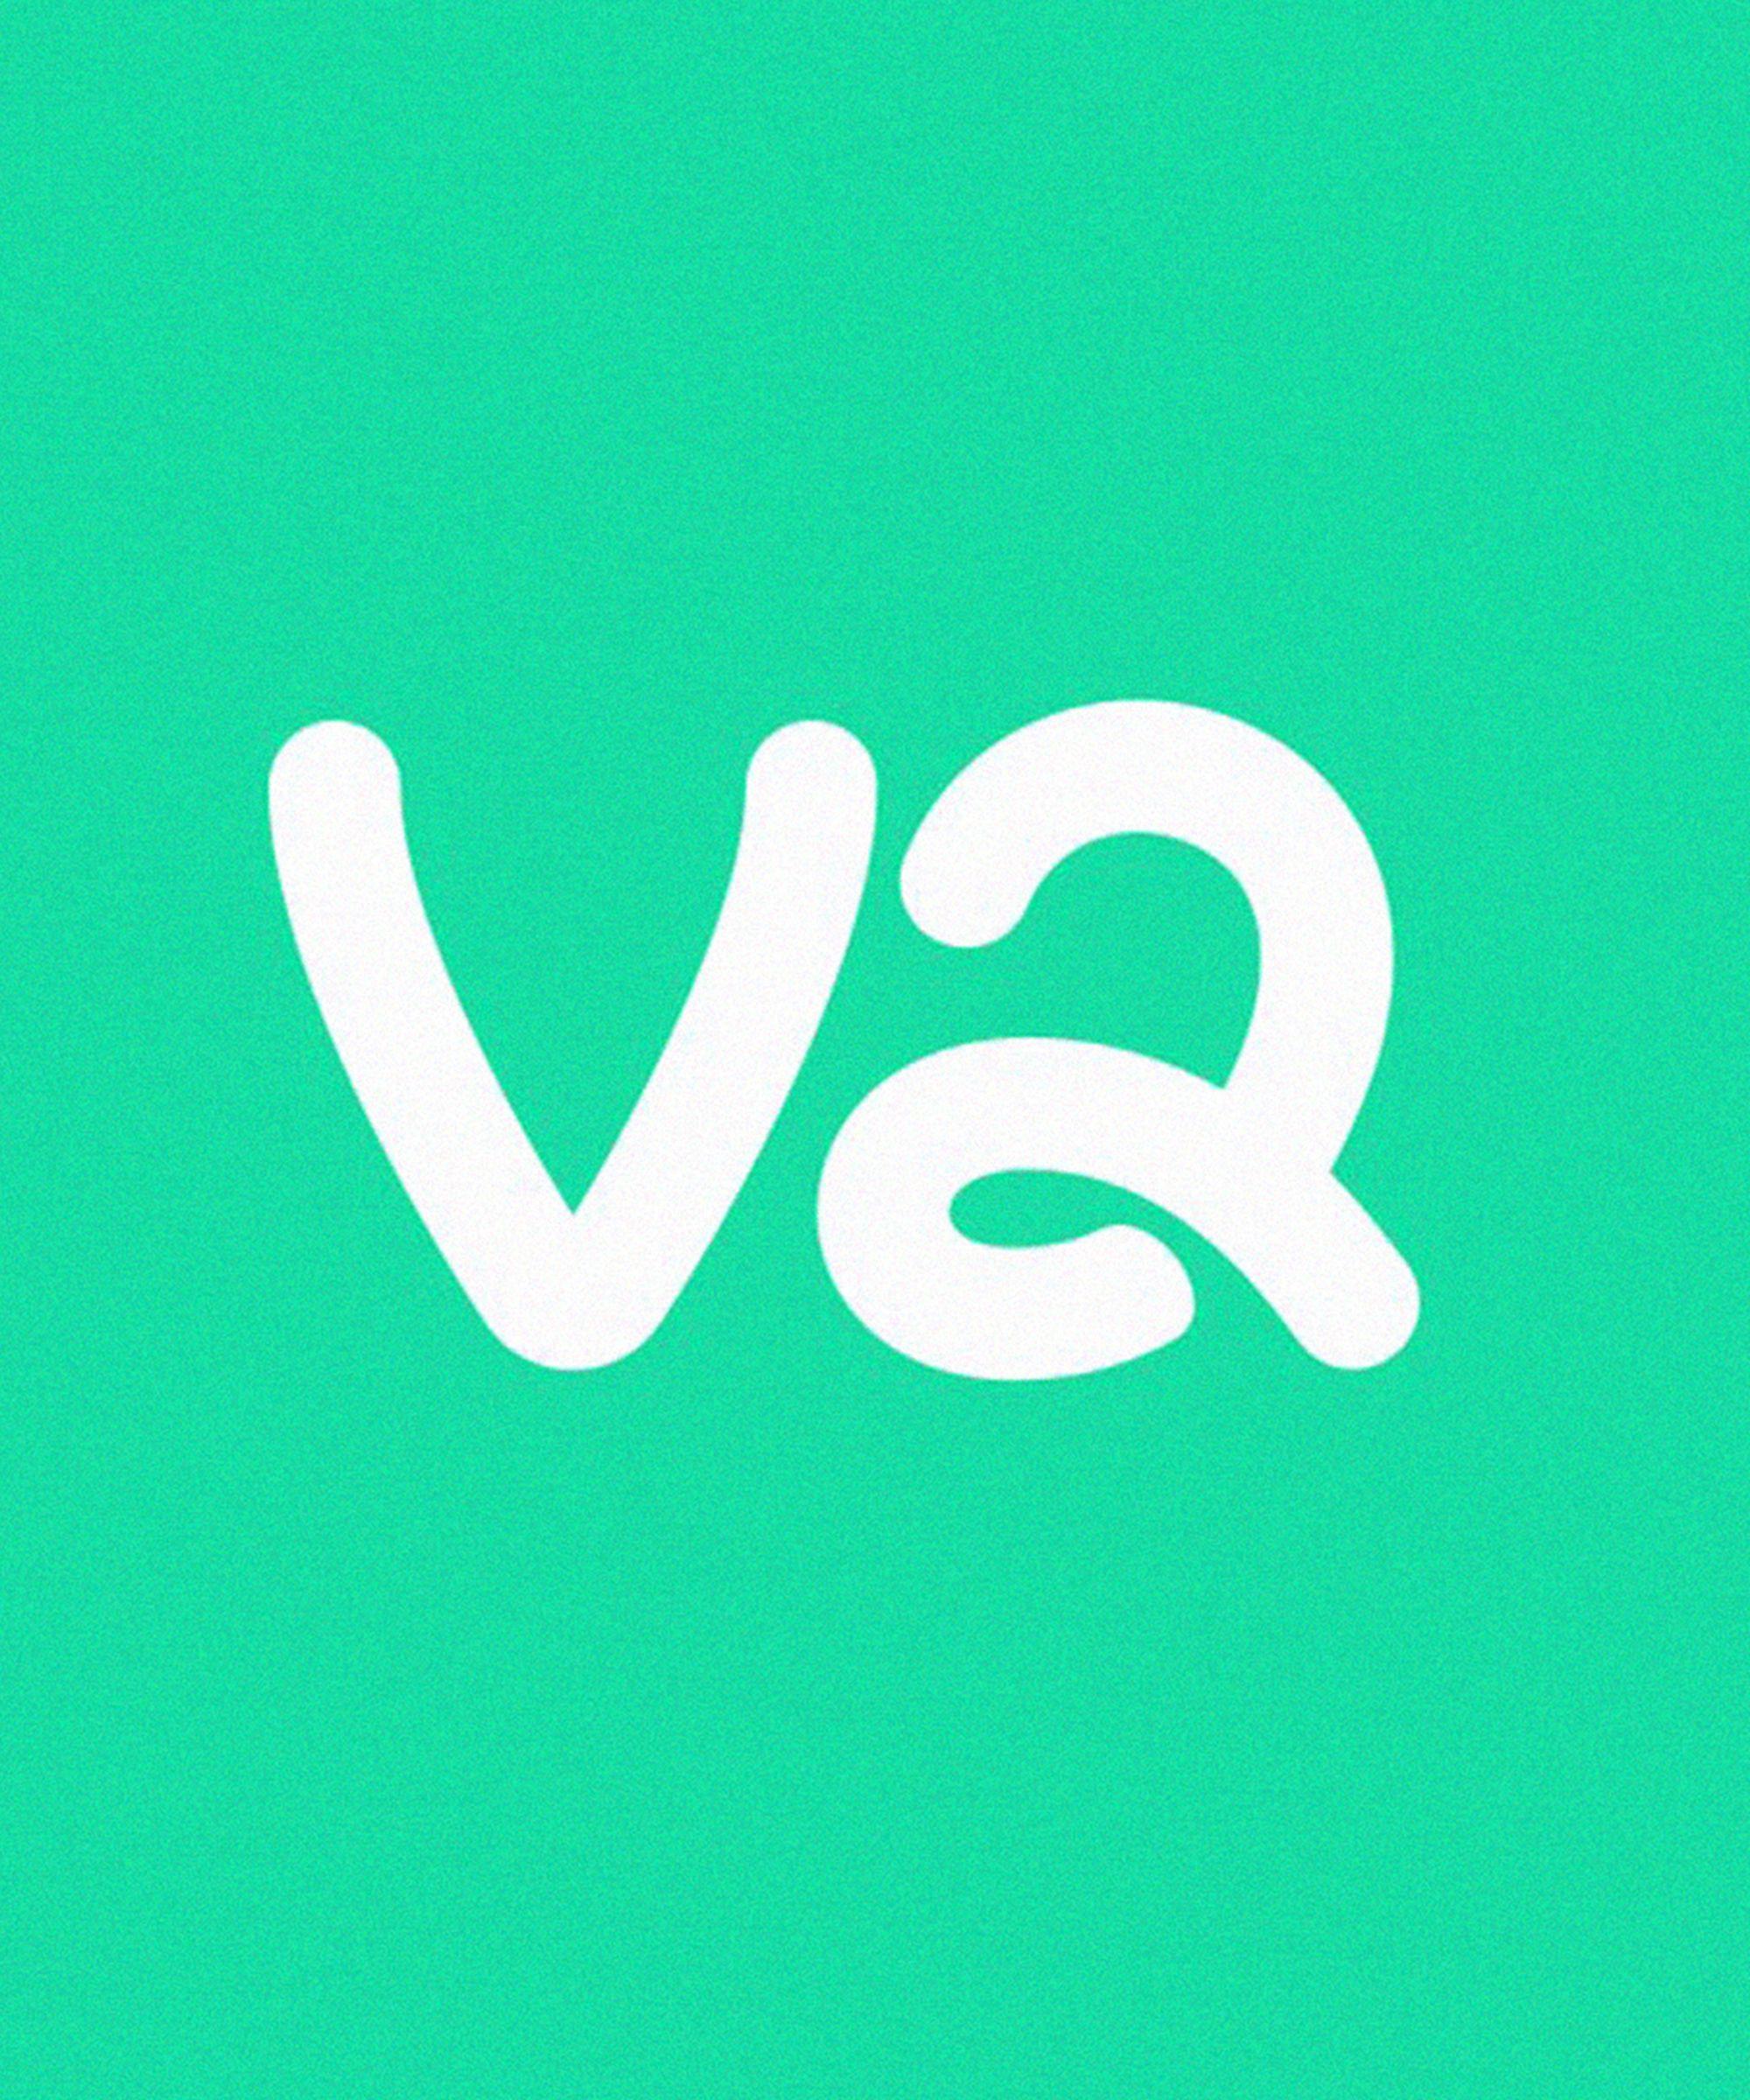 Vine 2 Logo - Vine 2 Social Media Release 2018, Dom Hofmann Twitter